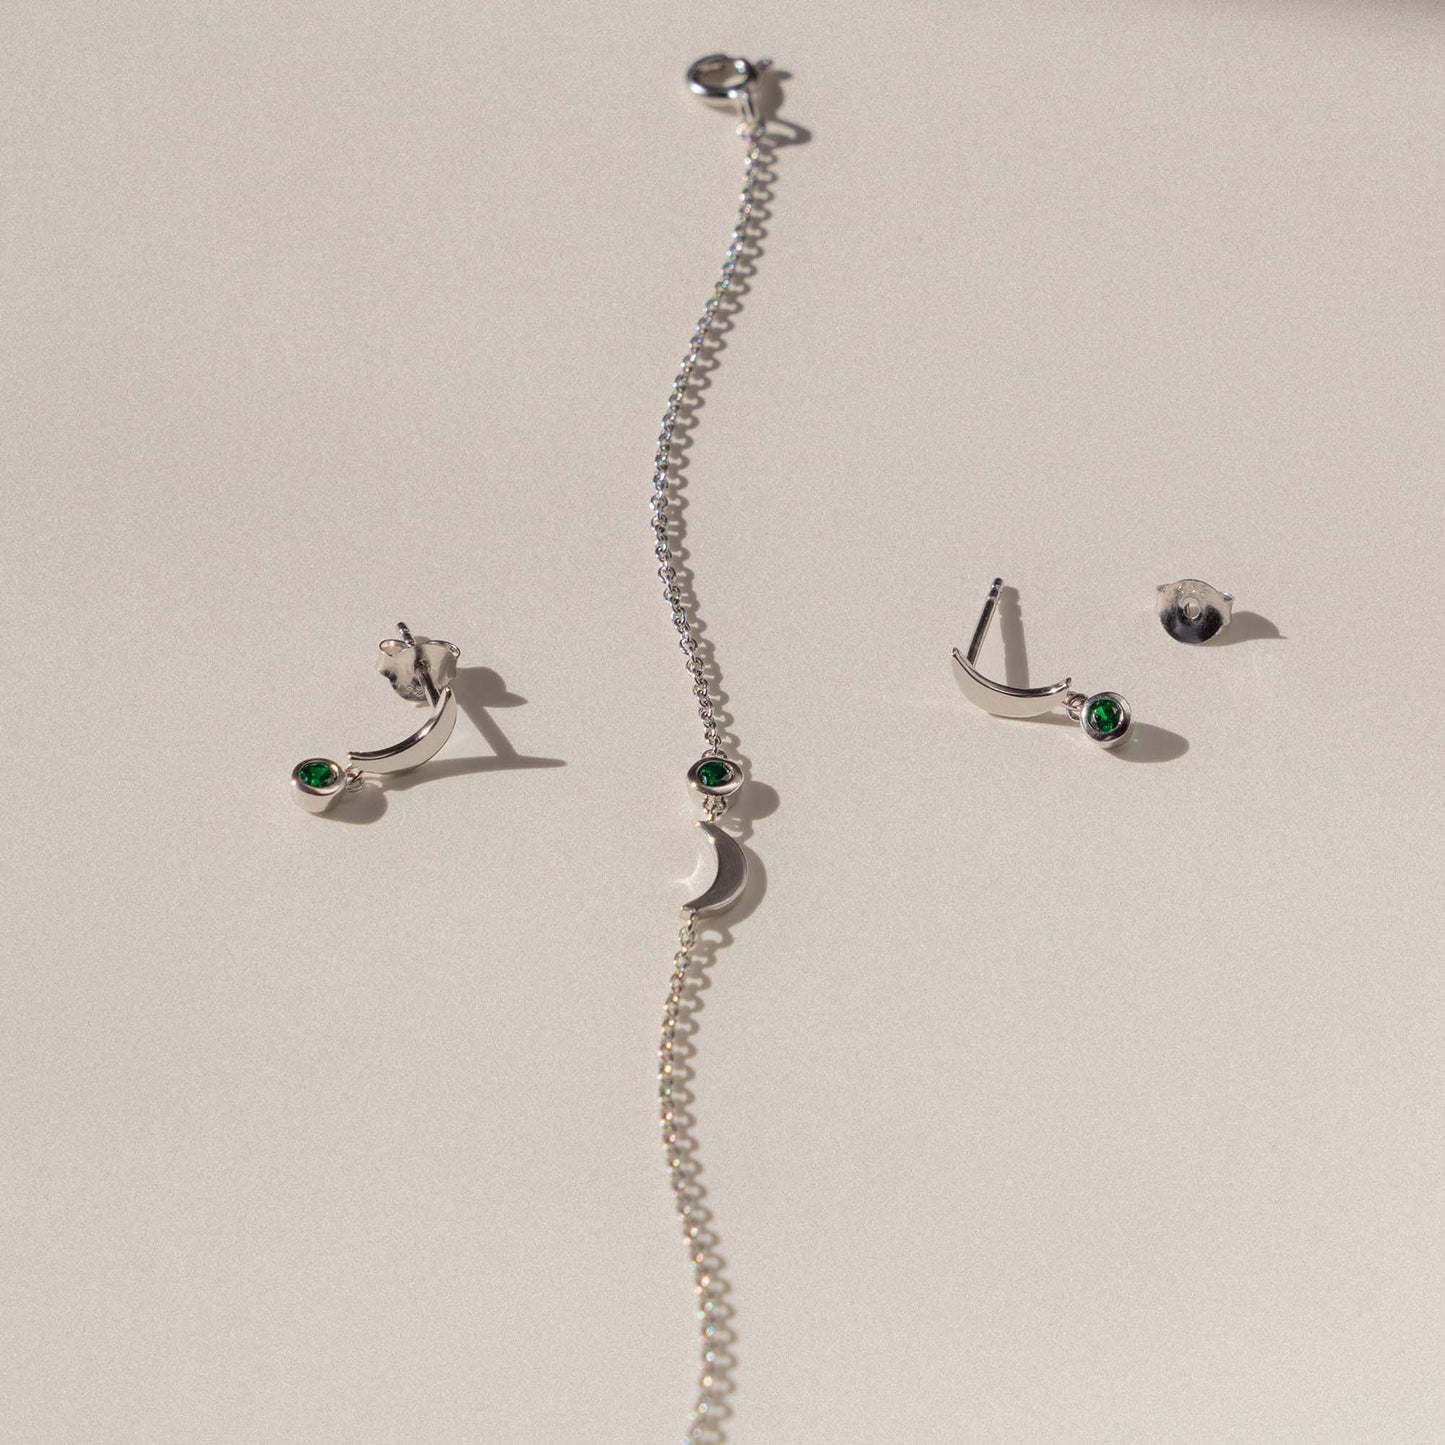 Violet's Gift 925 Sterling Silber Armband und Ohrstecker Geschenkset mit grünen Zirkonia Steinen